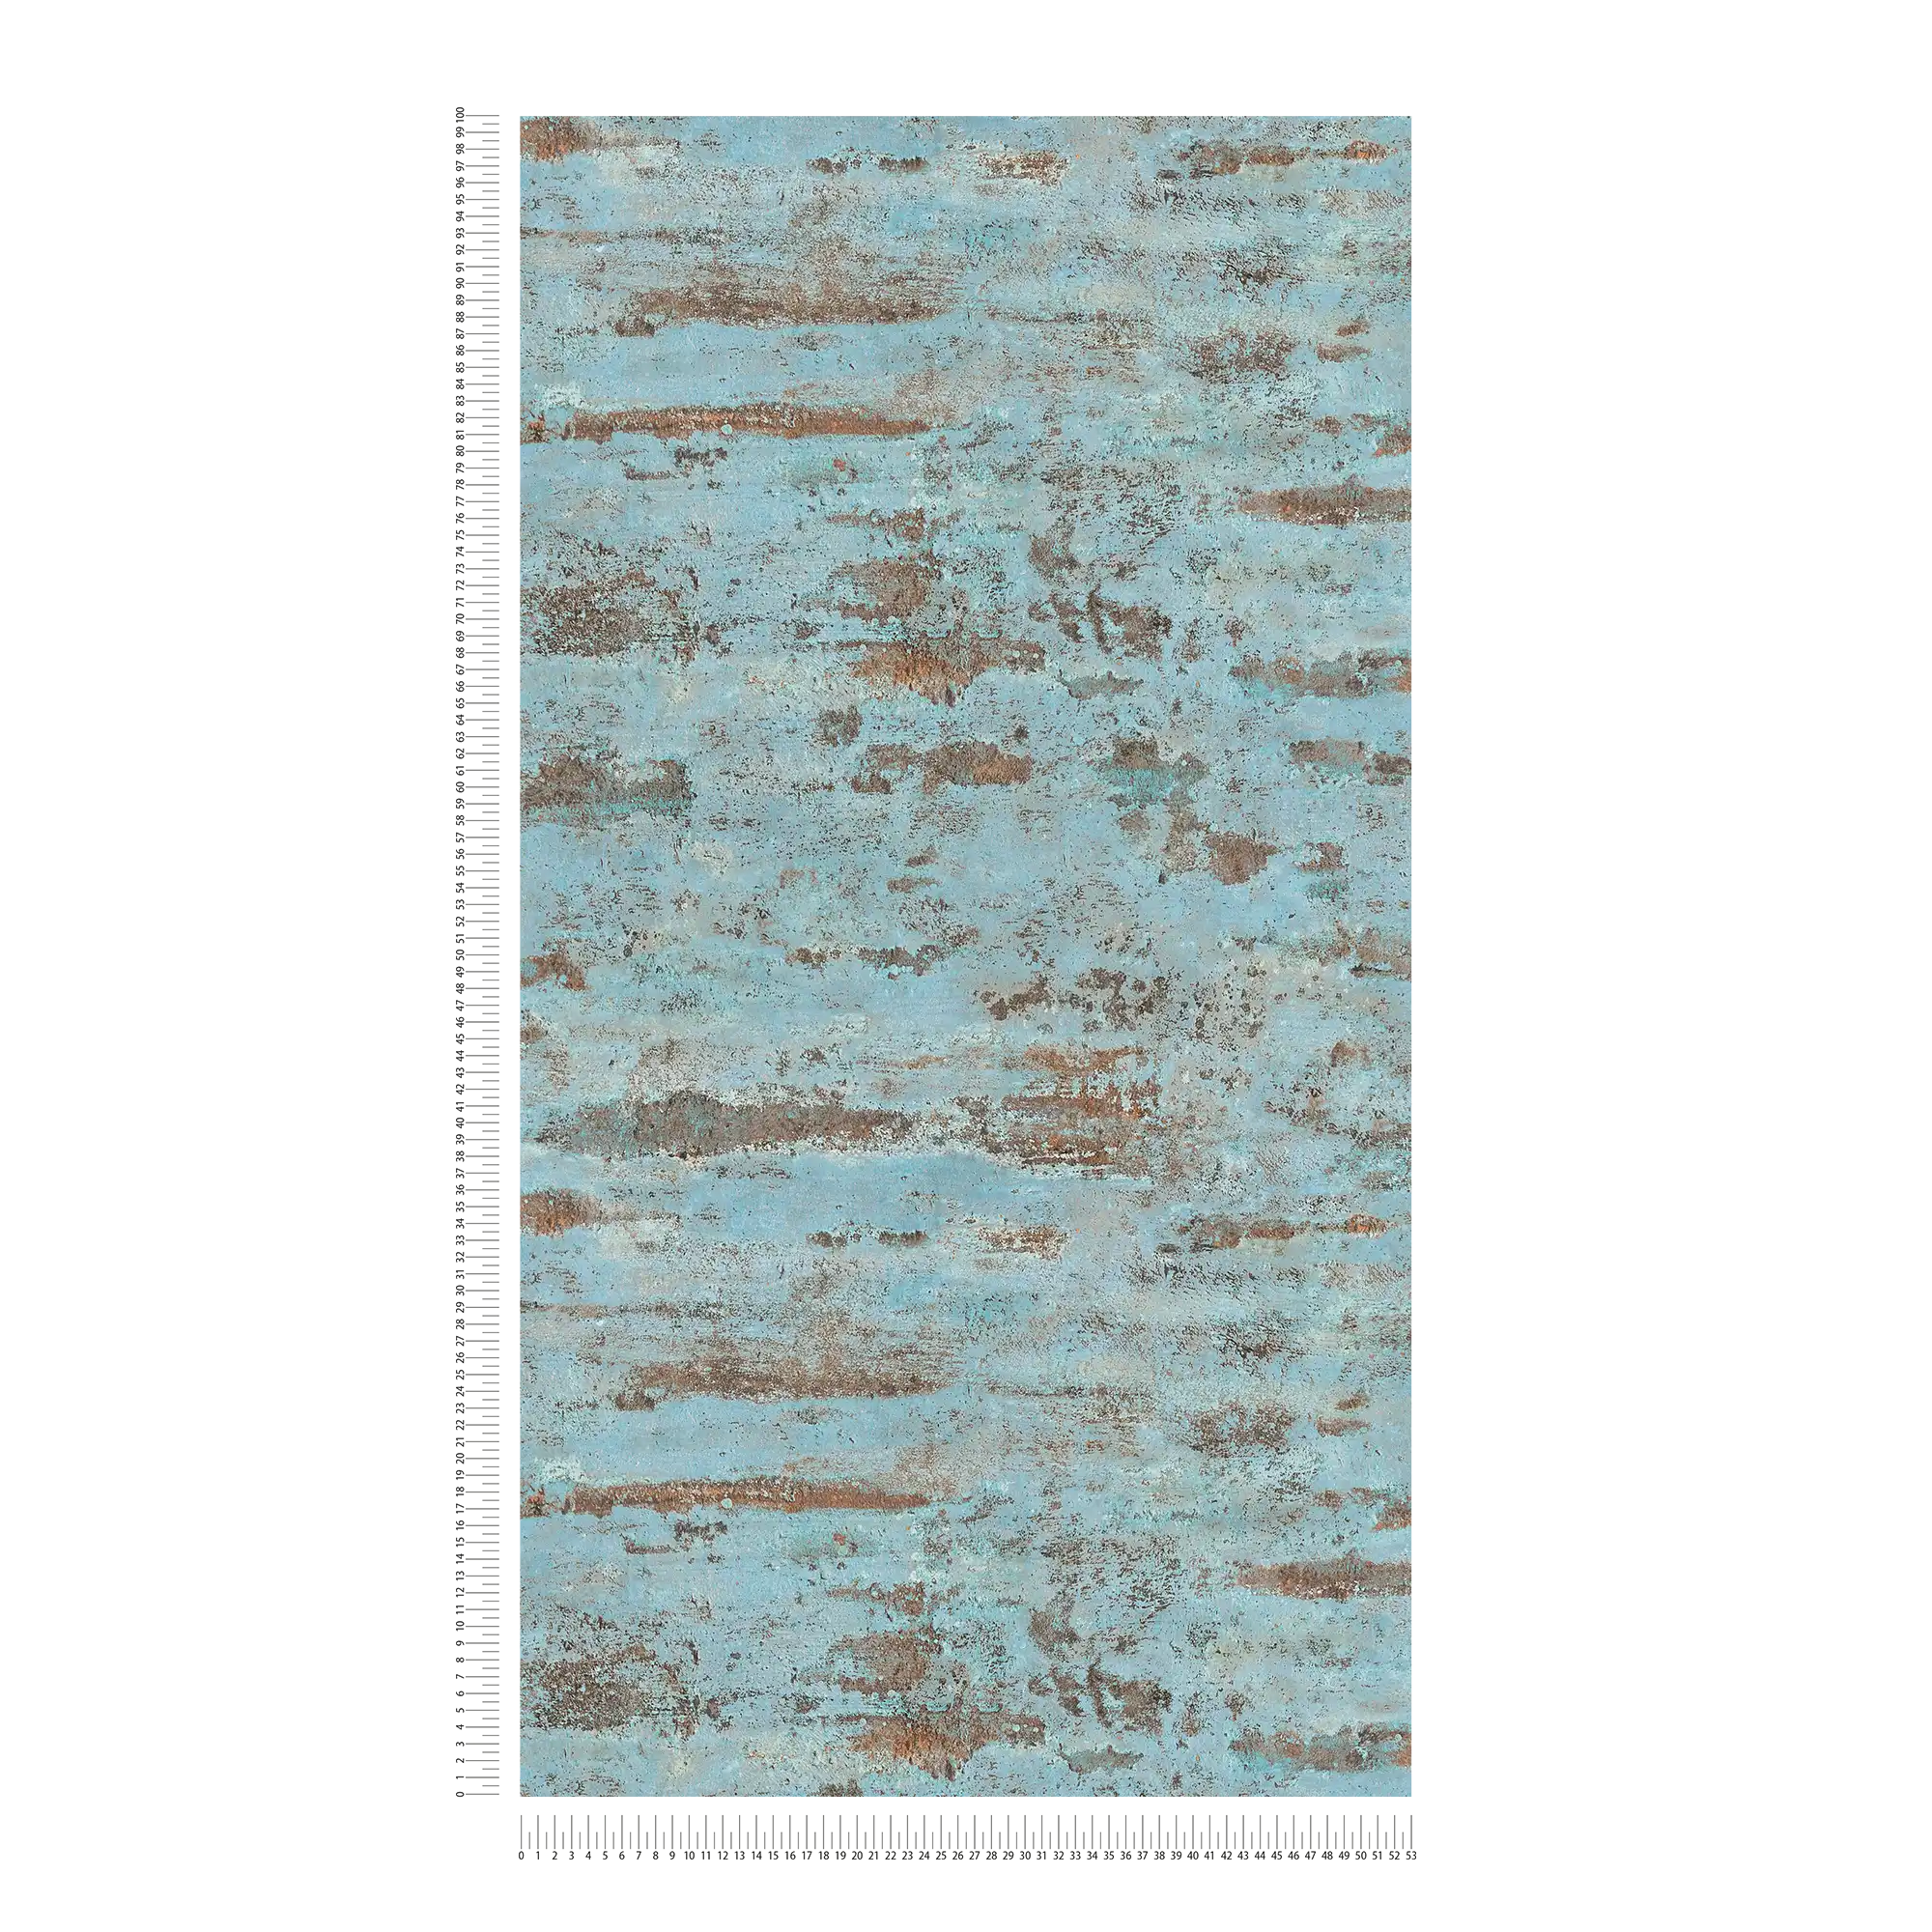             Papel pintado no tejido Óptica oxidada Diseño metálico oxidado - azul, marrón
        